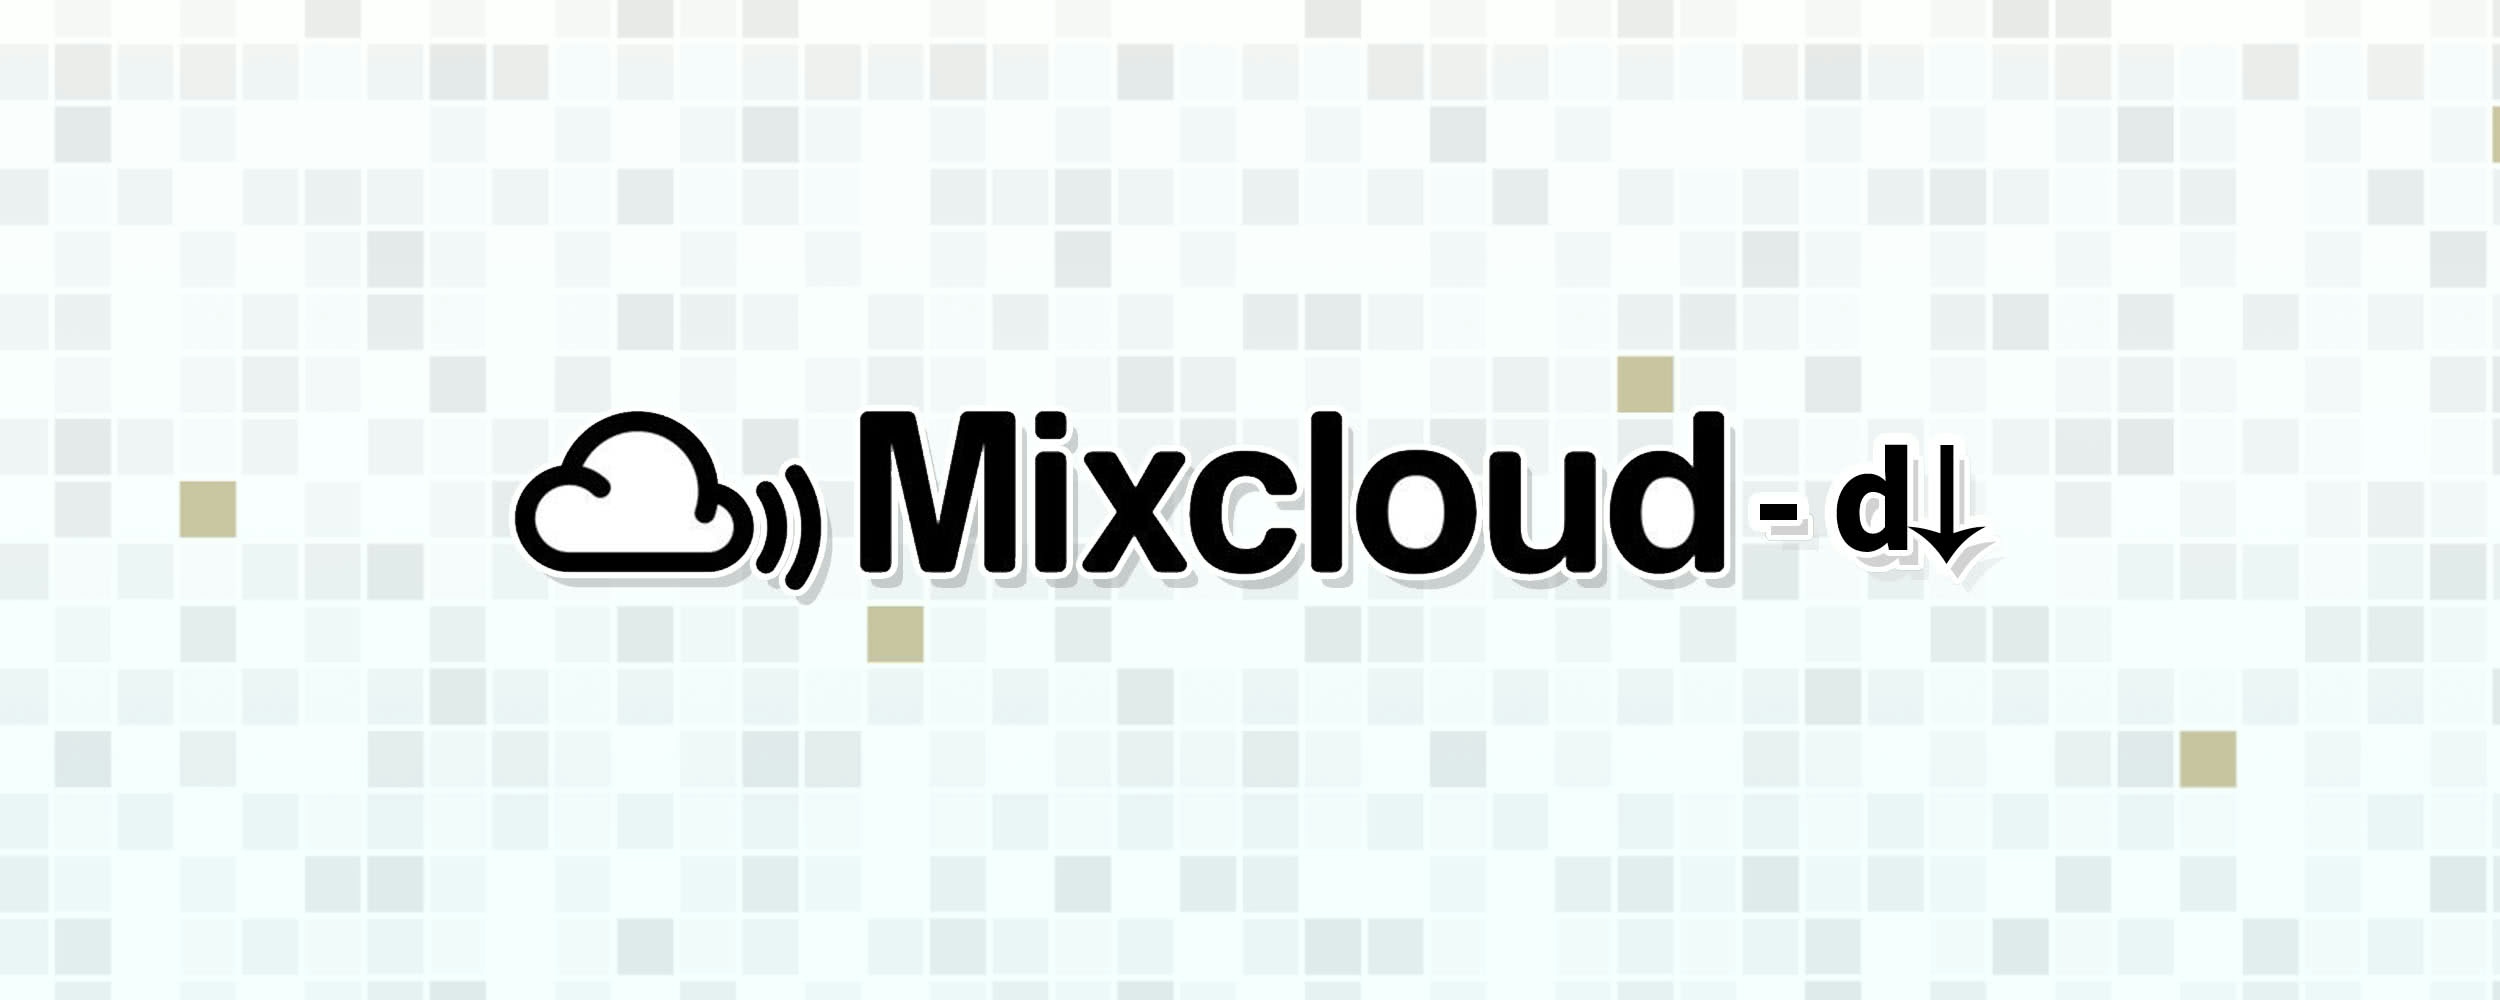 post header image for Mixcloud-dl